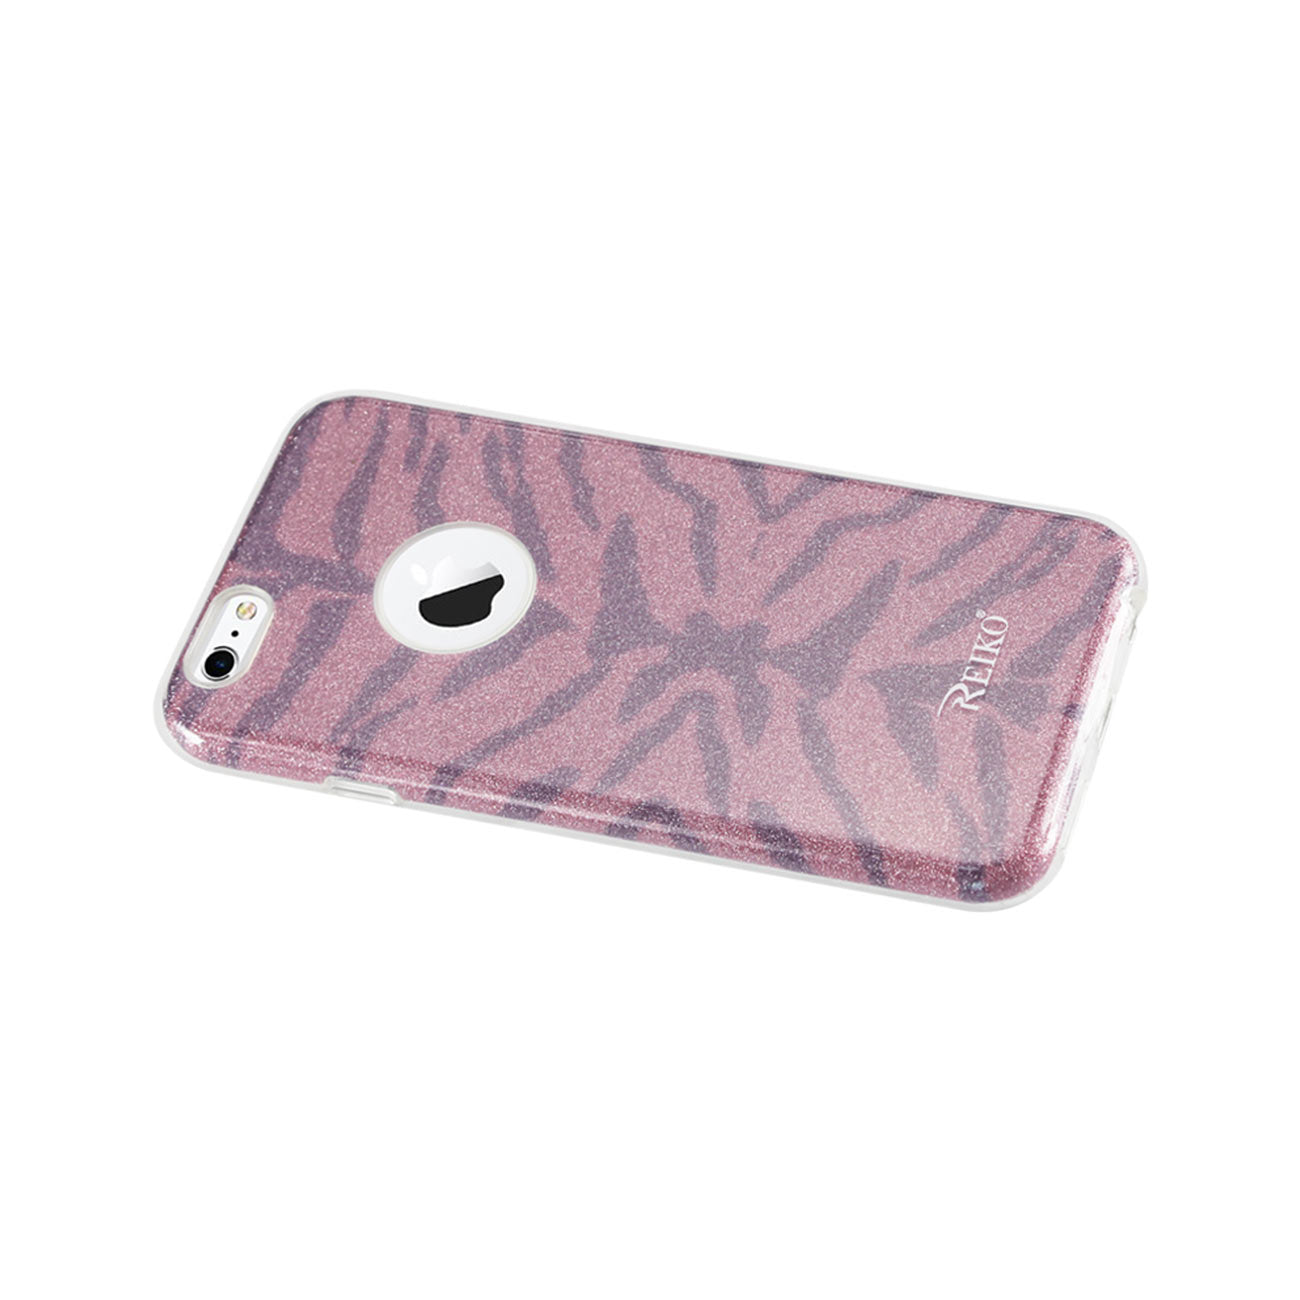 Case Hybrid Shine Glitter Shimmer Tiger Stripe iPhone 6/ 6S Hot Pink Color